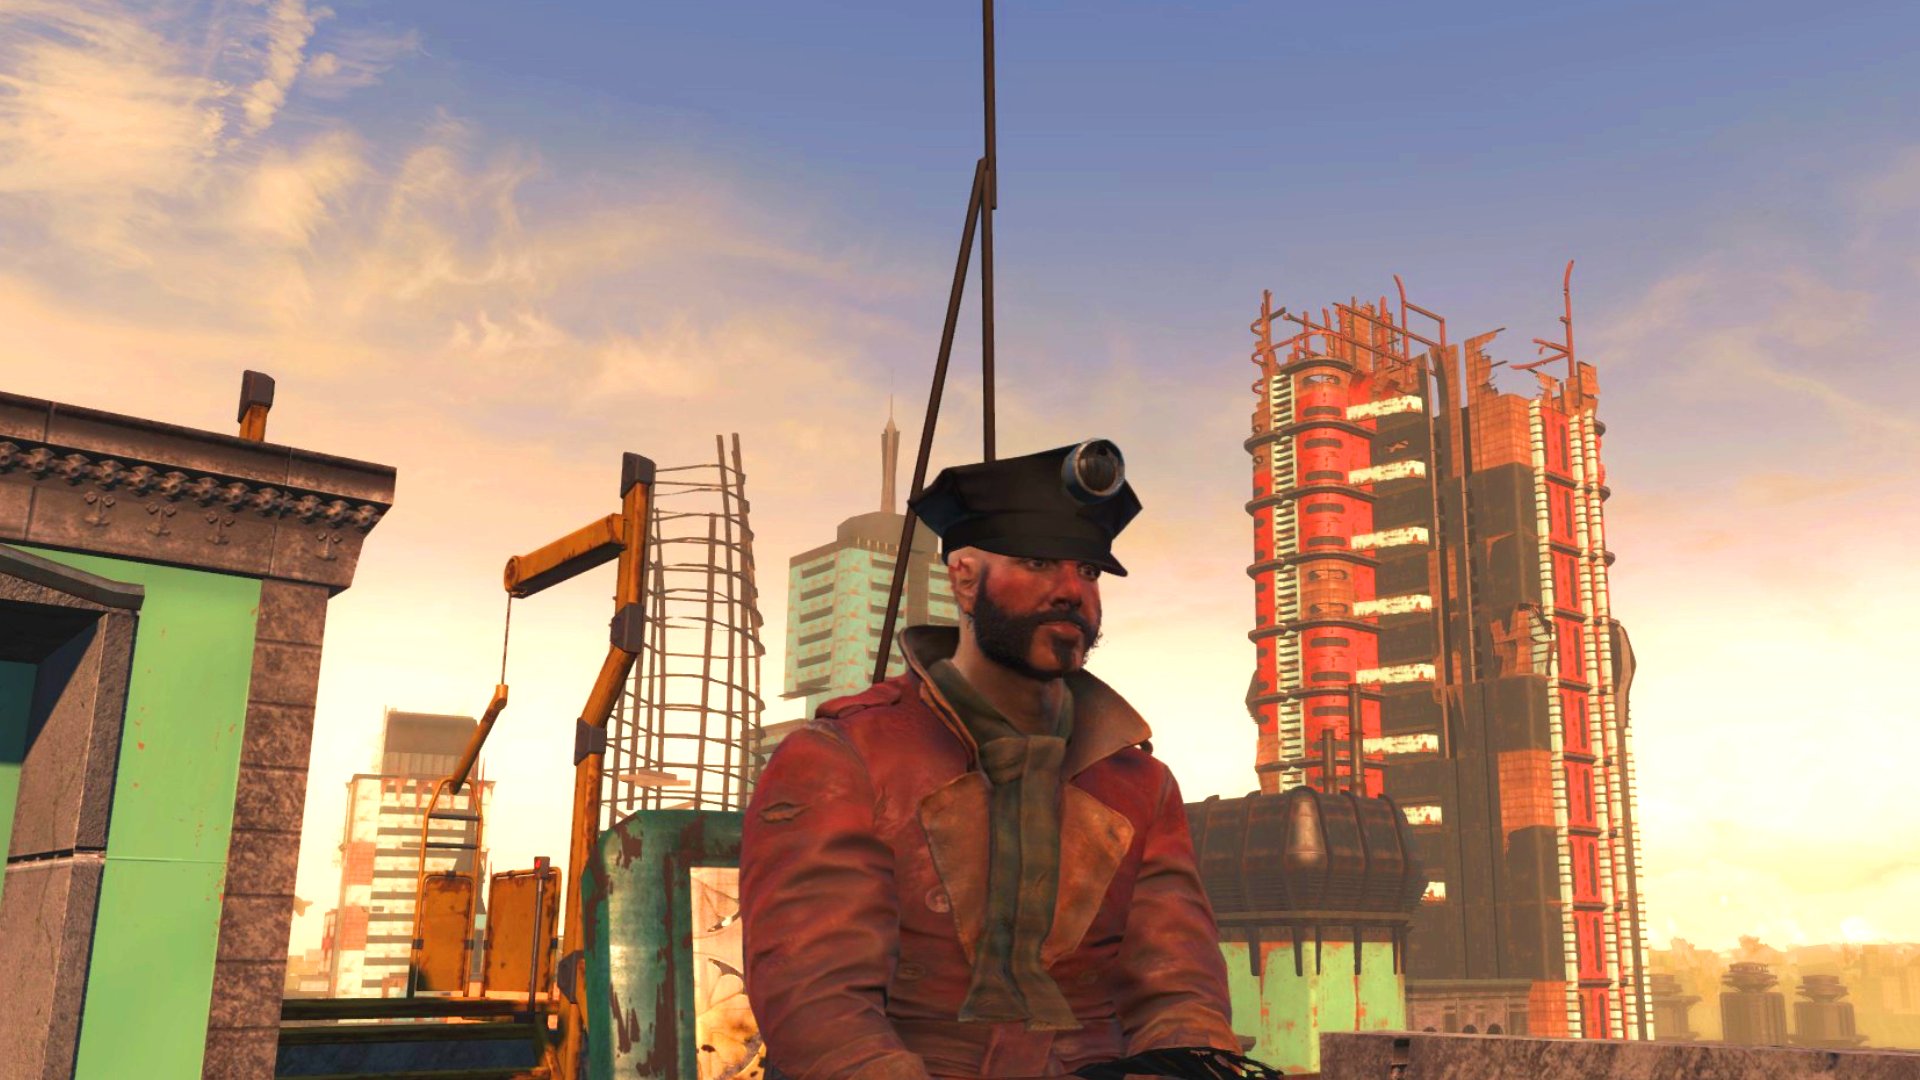 Fallout London incelemesi: Fallout London'da gün doğumunda çatıda oturan kalın favorili bir İngiliz beyefendinin üçüncü şahıs çekimi.